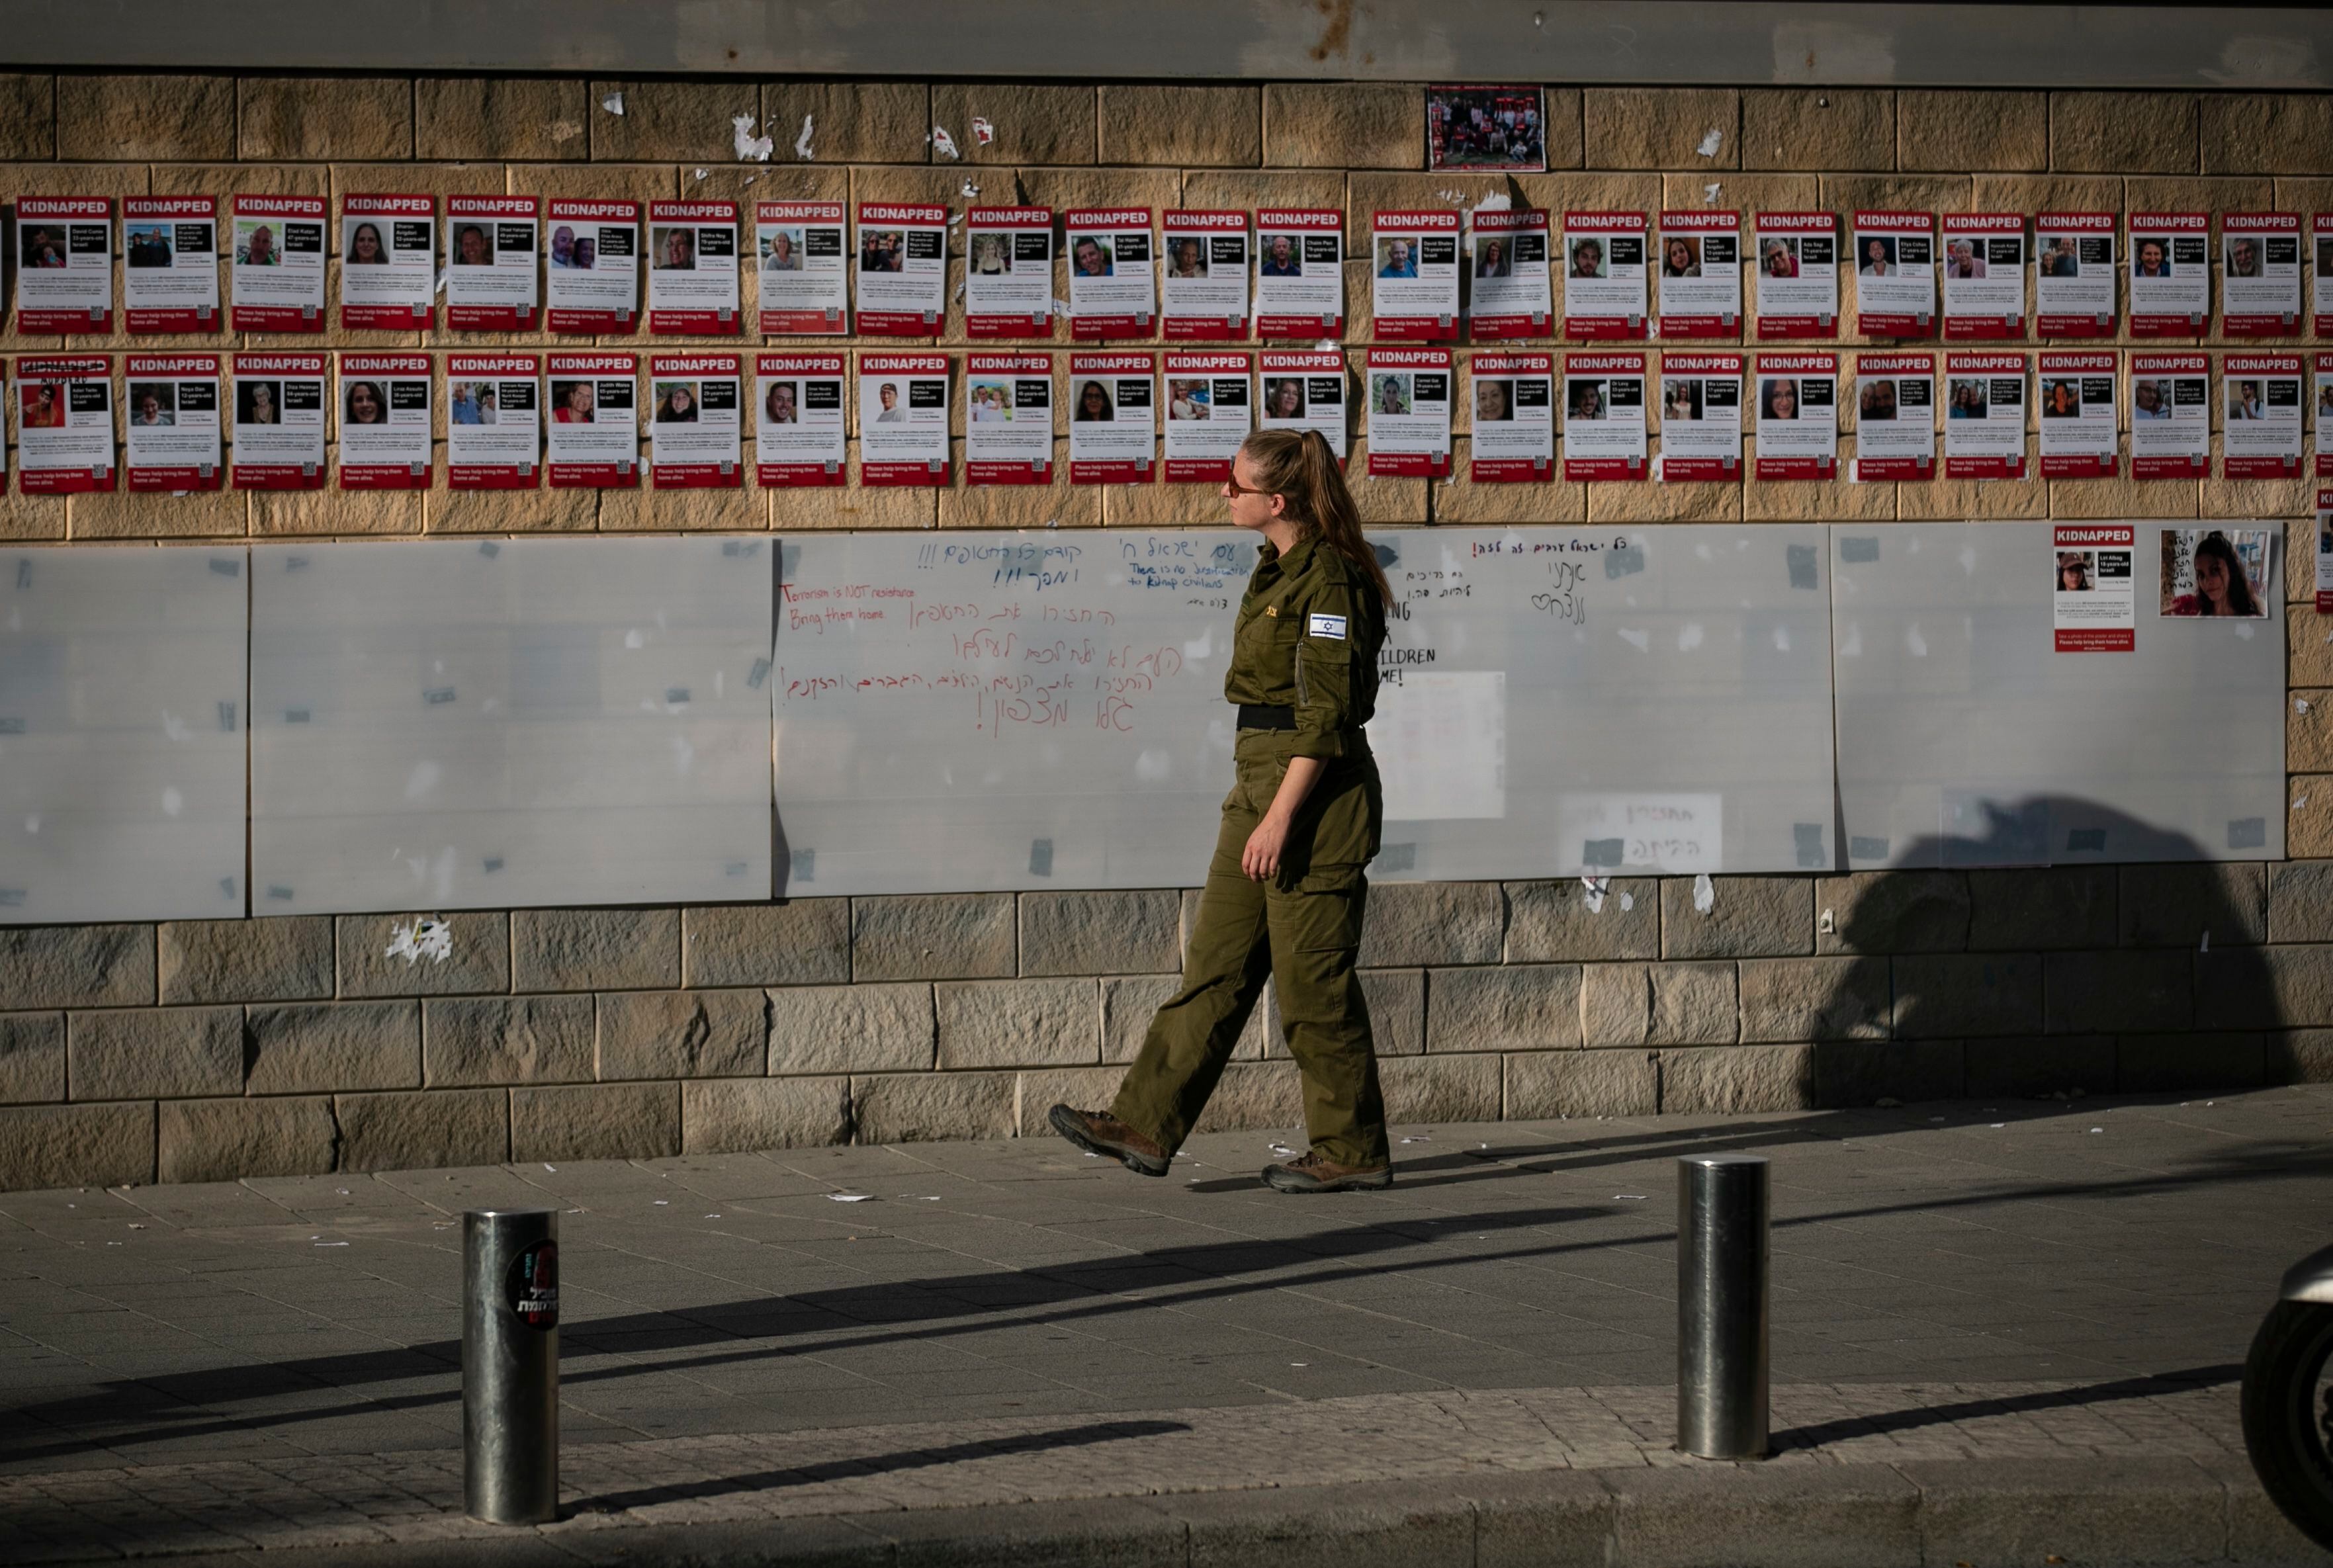 Una pared cubierta con carteles que muestran información sobre cautivos israelíes en Tel Aviv, Israel. El ejército israelí dijo que al menos 199 rehenes estaban retenidos en Gaza, mientras que Hamás afirmó que había entre 200 y 250 cautivos israelíes en Gaza desde que lanzó un ataque sorpresa contra Israel el 7 de octubre. Europa Press/Contacto/Chen Junqing